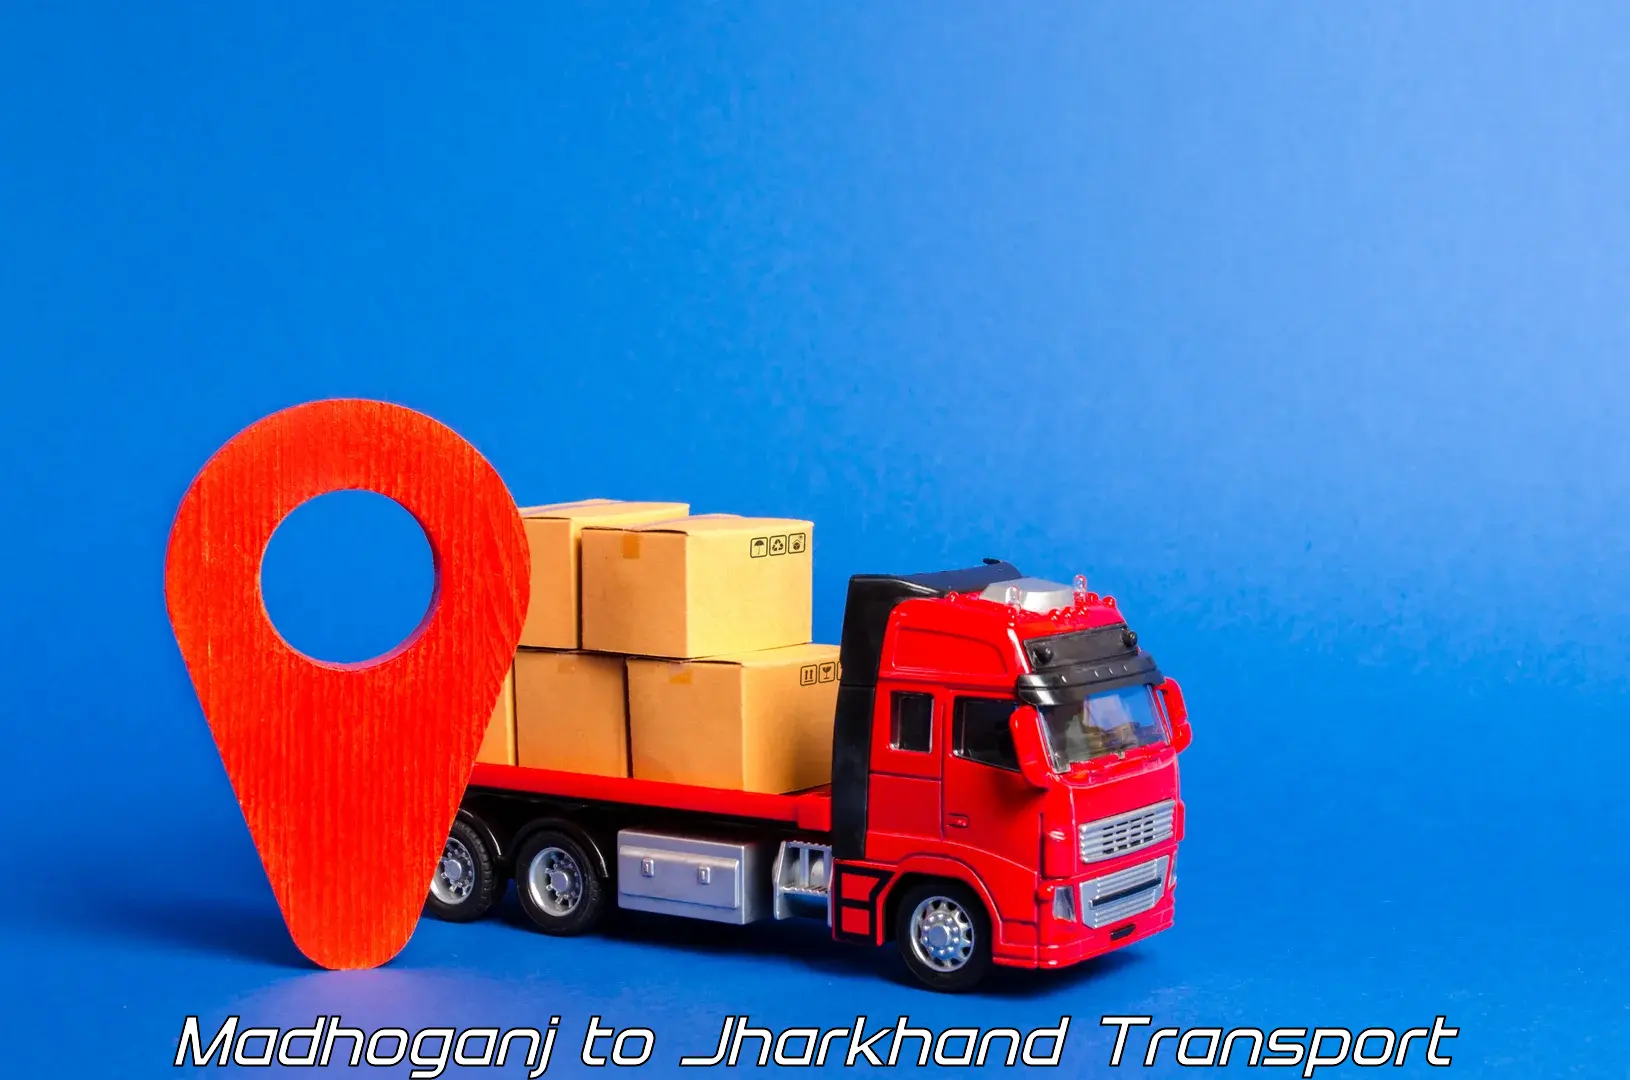 Cargo transport services Madhoganj to Jamshedpur